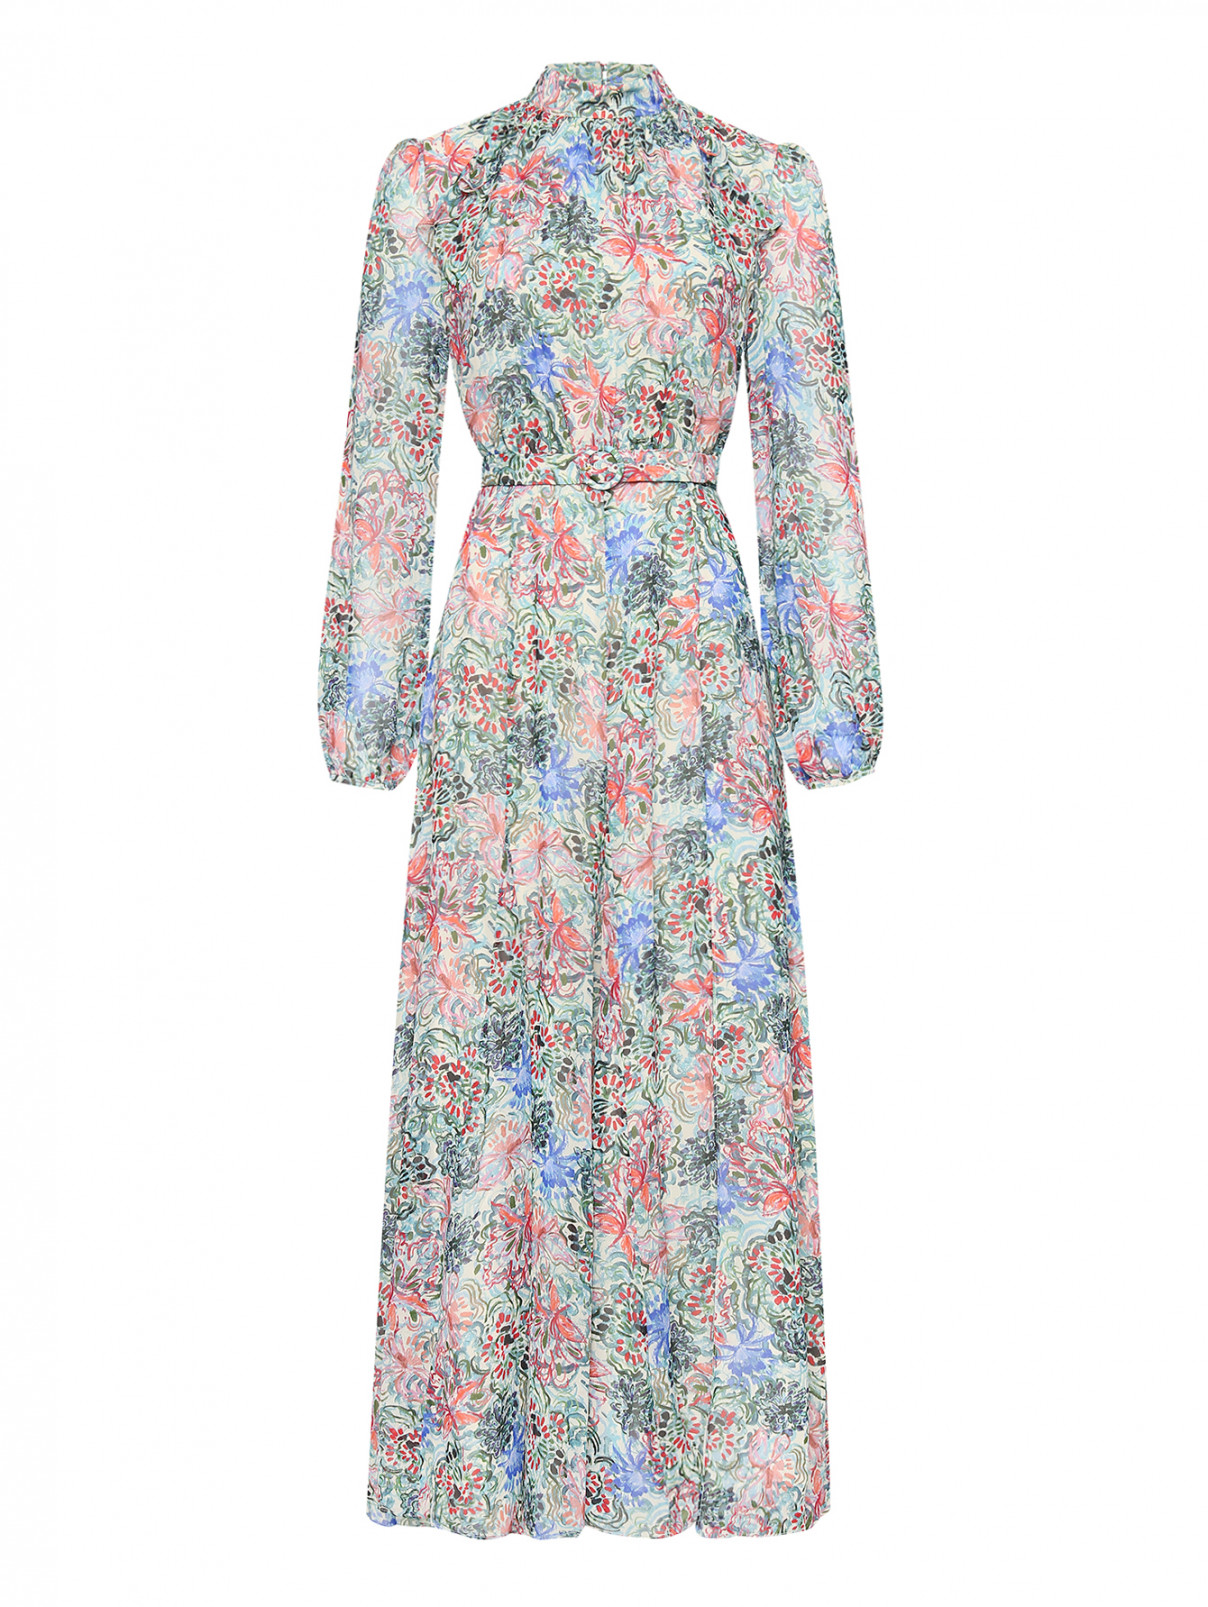 Платье из шелка с поясом Saloni  –  Общий вид  – Цвет:  Мультиколор